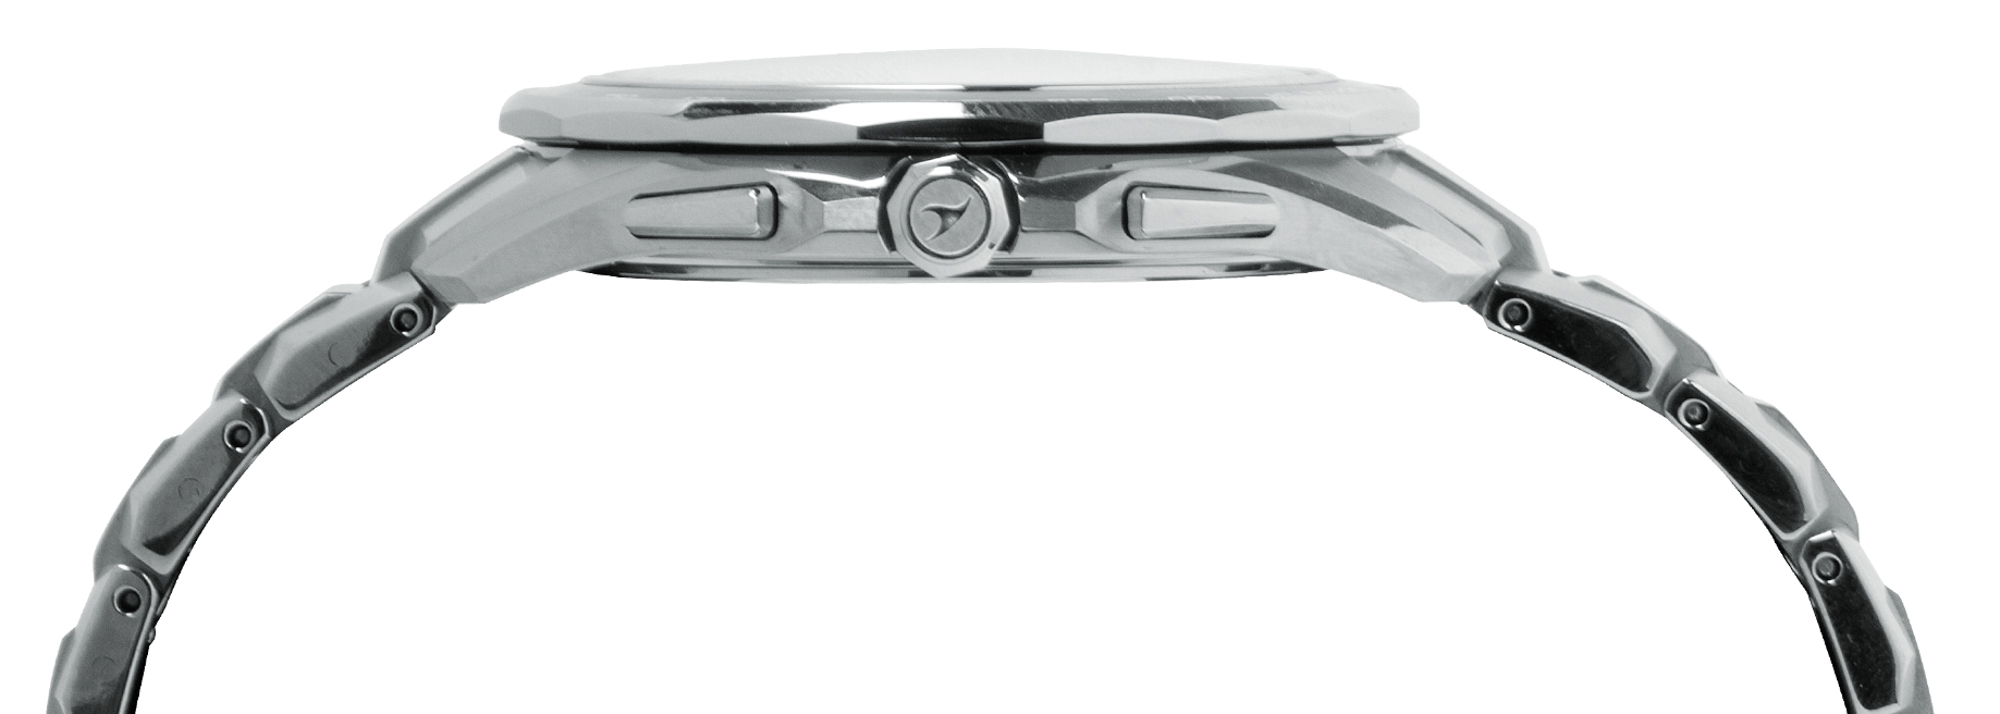 Новинка: часы Casio Oceanus Manta с безелями из сапфирового стекла